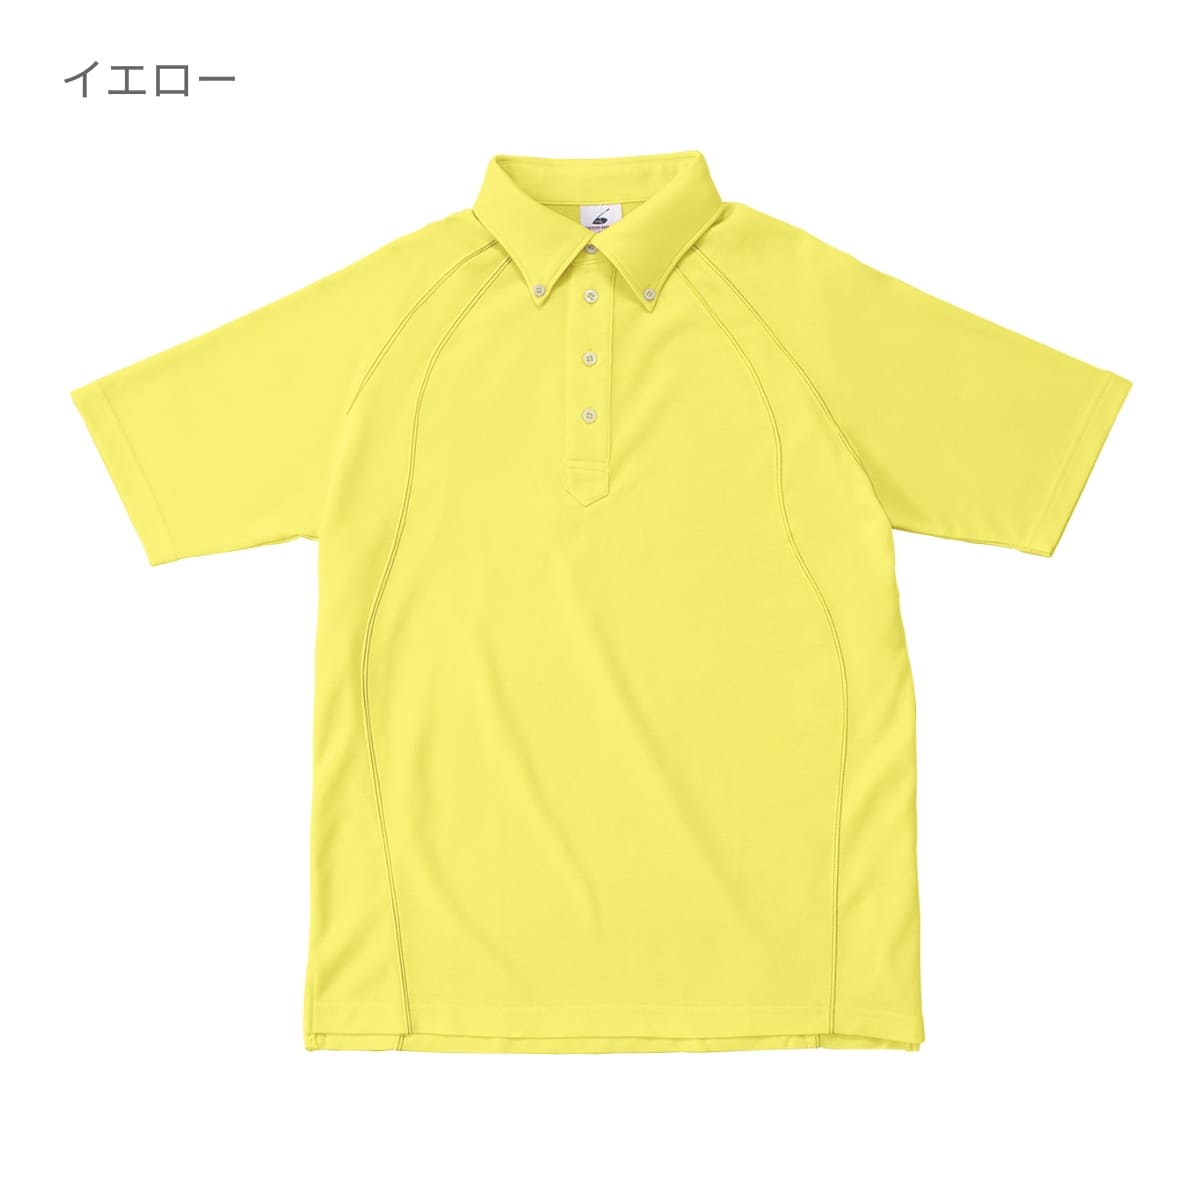 ボタンダウンポロシャツ | メンズ | 1枚 | BDP-262 | シルバーグレー